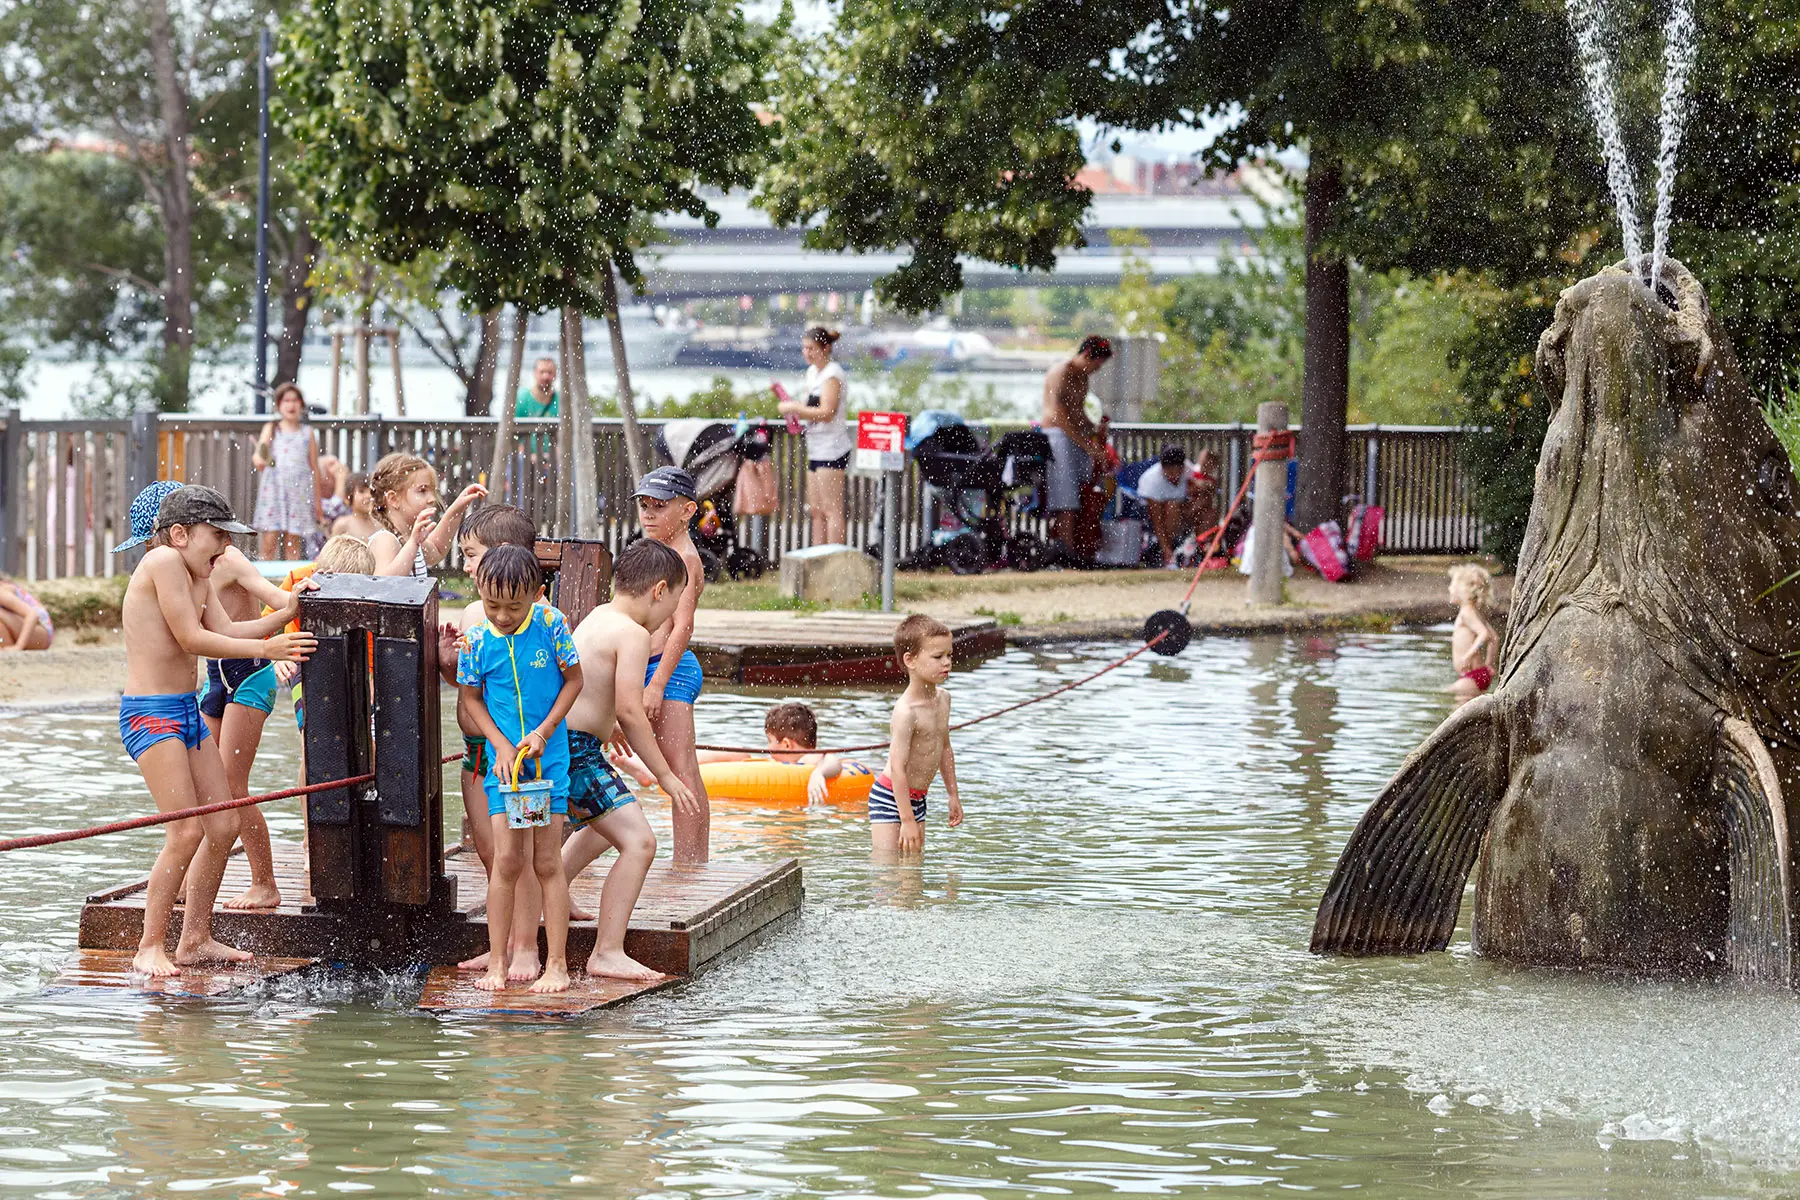 Kids playing in the water at the Wasserspielplatz Donauinsel in Vienna, Austria